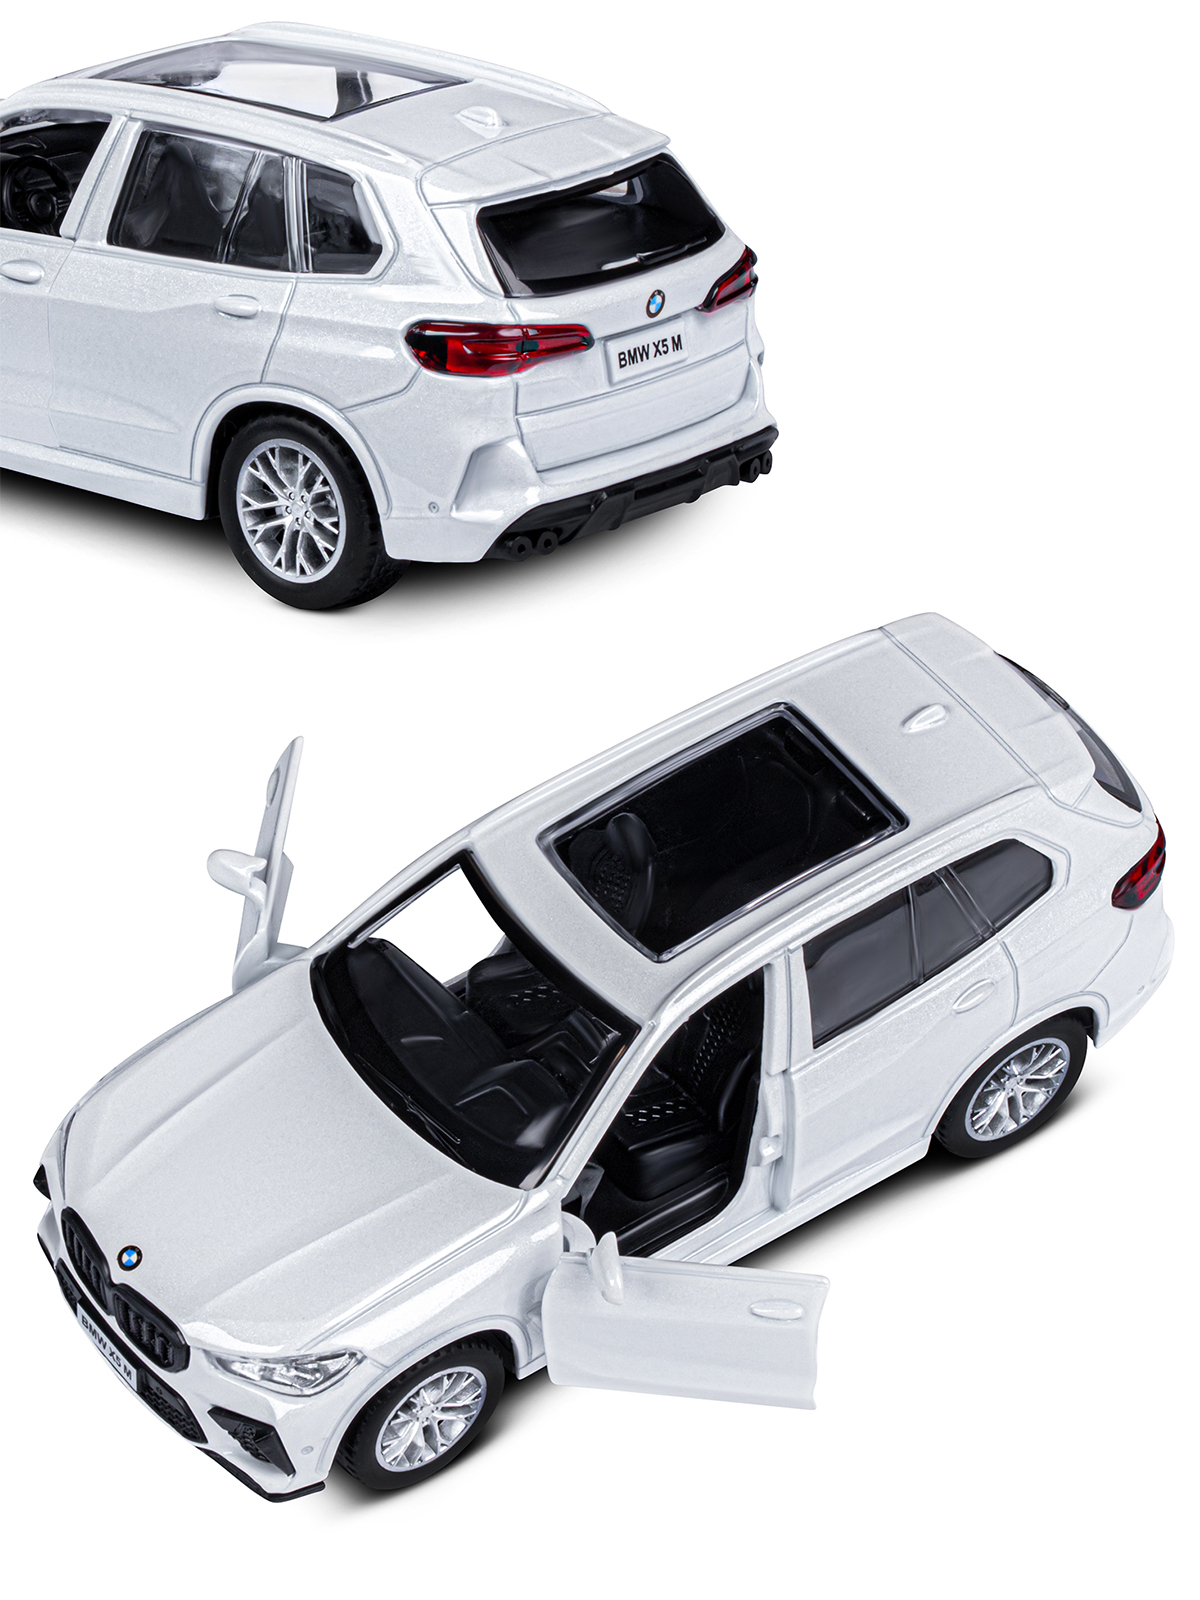 Машинка металлическая АВТОпанорама игрушка детская 1:43 BMW X5M белый инерционная JB1251562 - фото 8